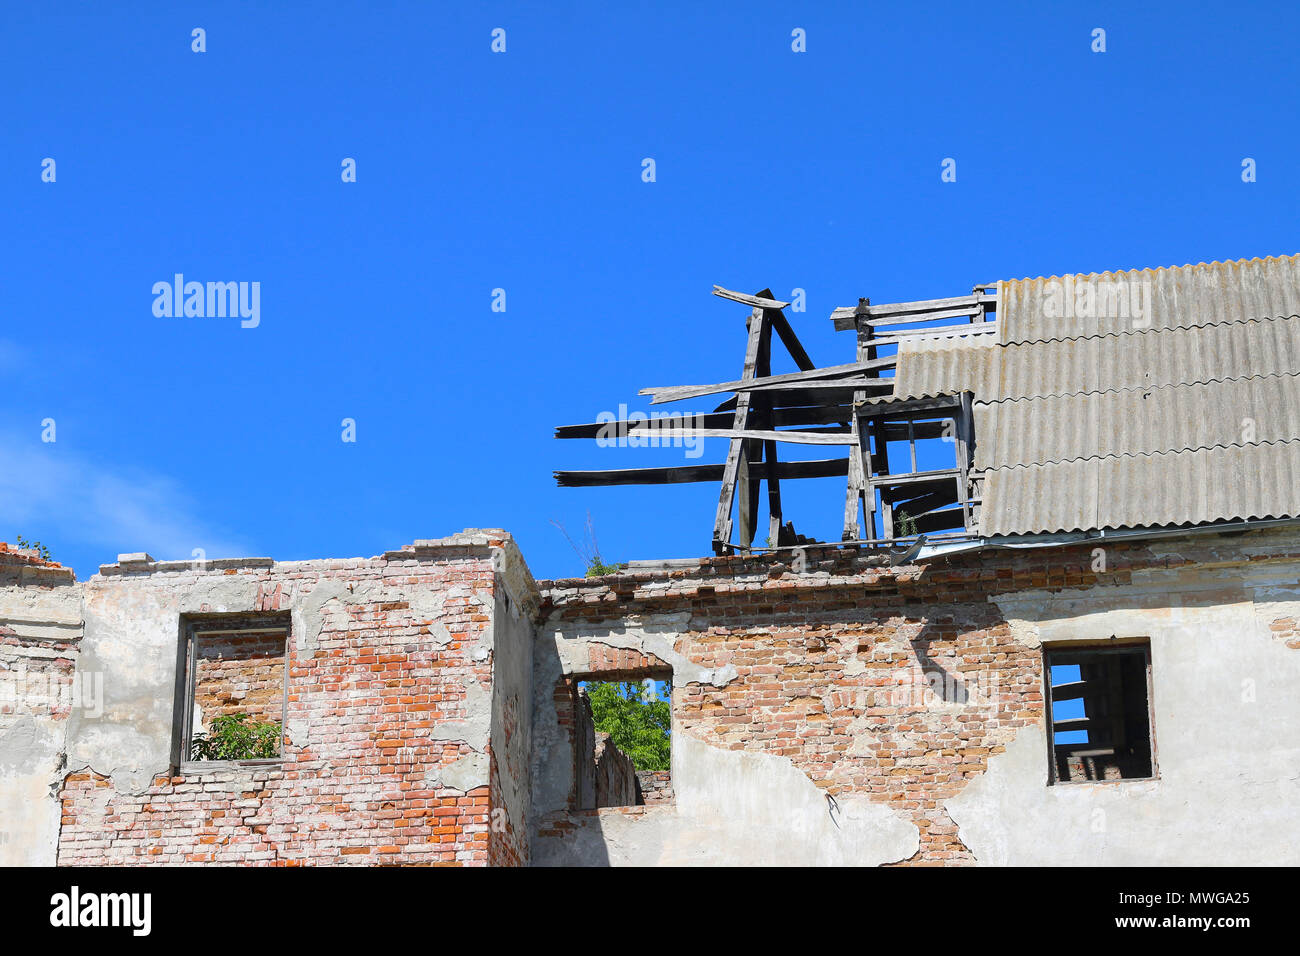 Un vieux bâtiment abandonné. Ciel bleu sur une journée ensoleillée. Banque D'Images